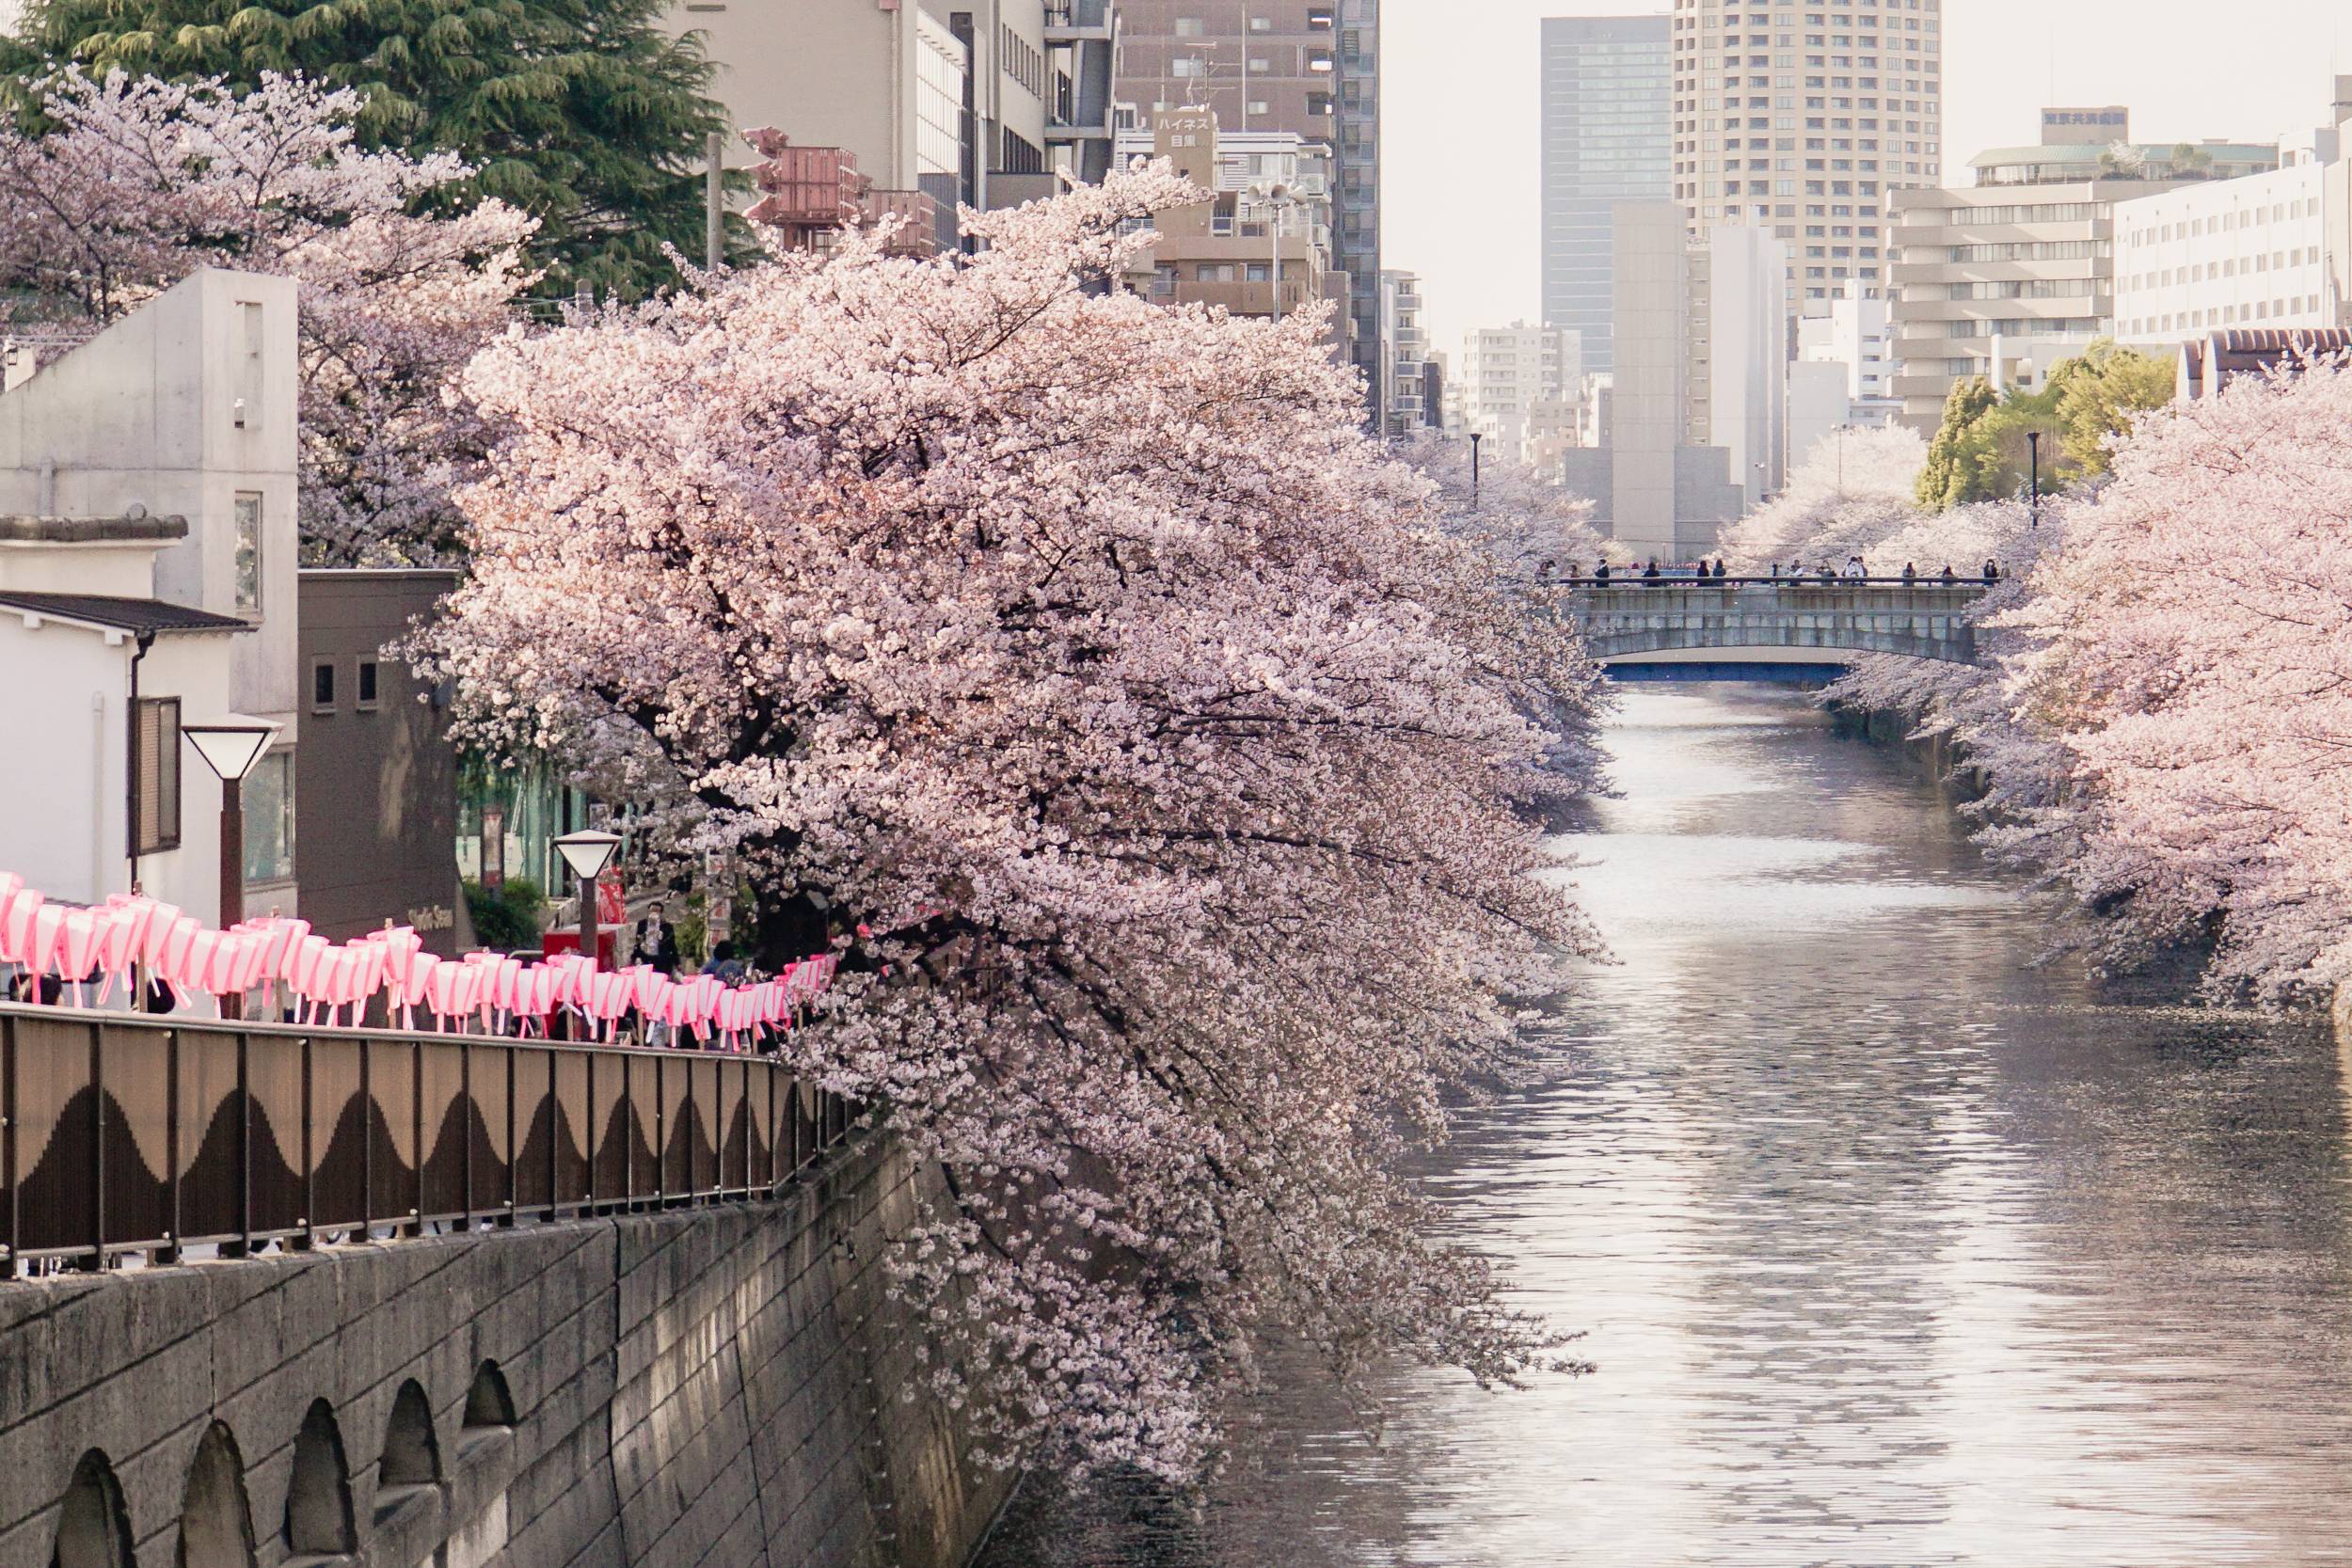 Tokio – wenn High-Tech, Kitsch und Kirschblüten aufeinandertreffen